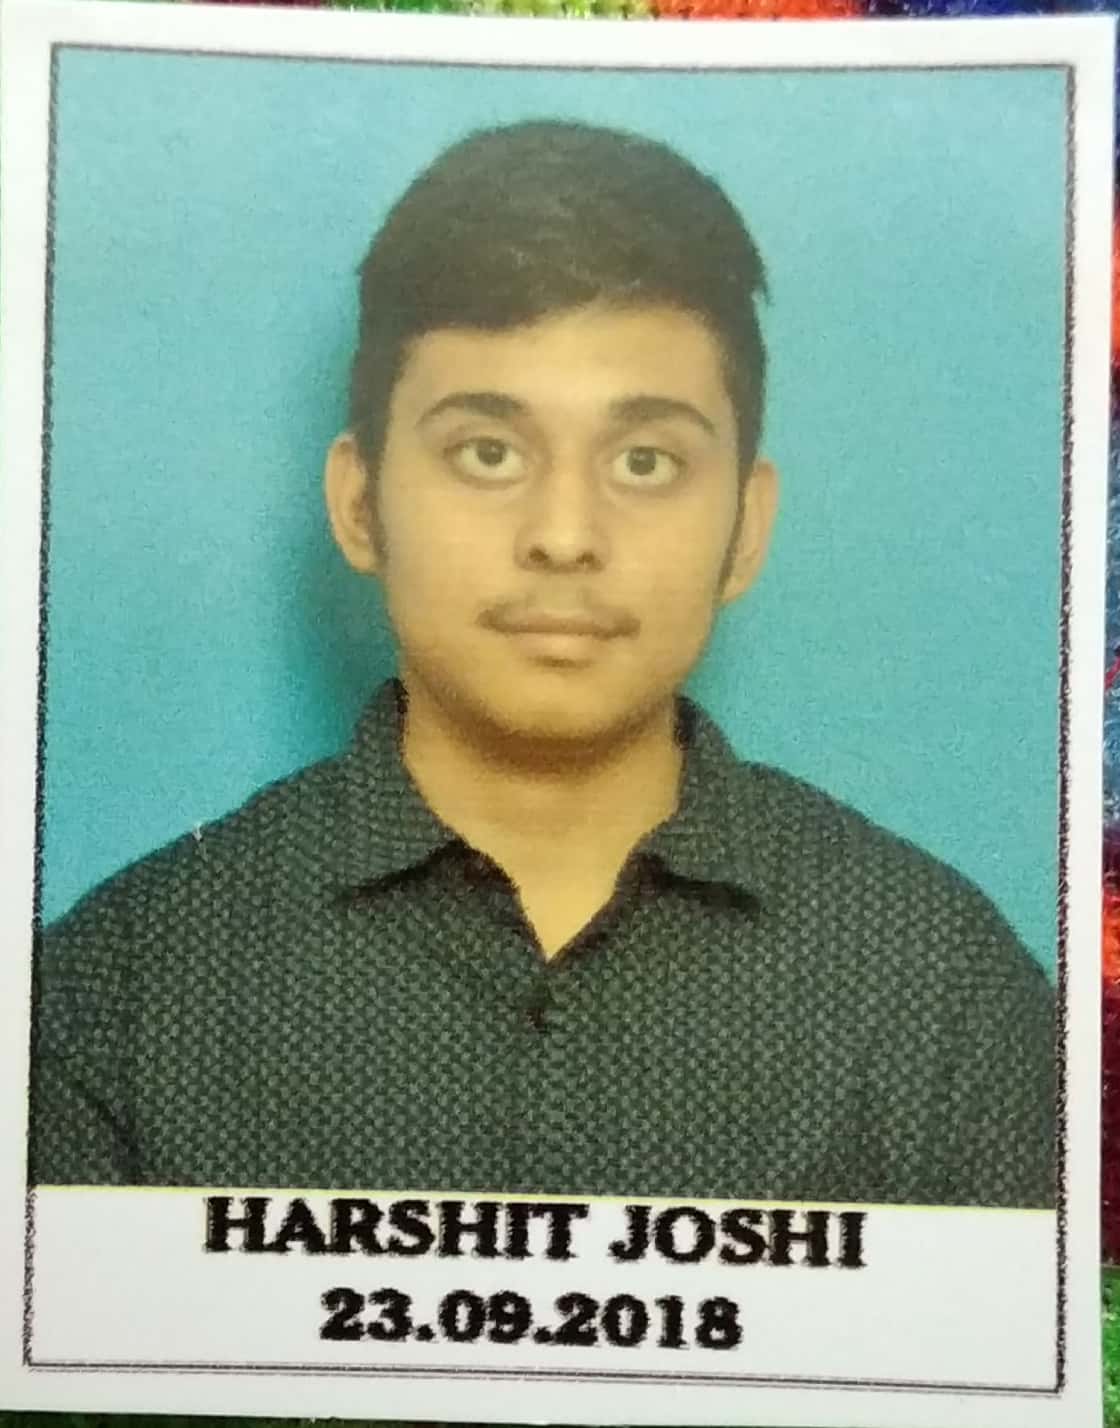 HARSHIT JOSHI